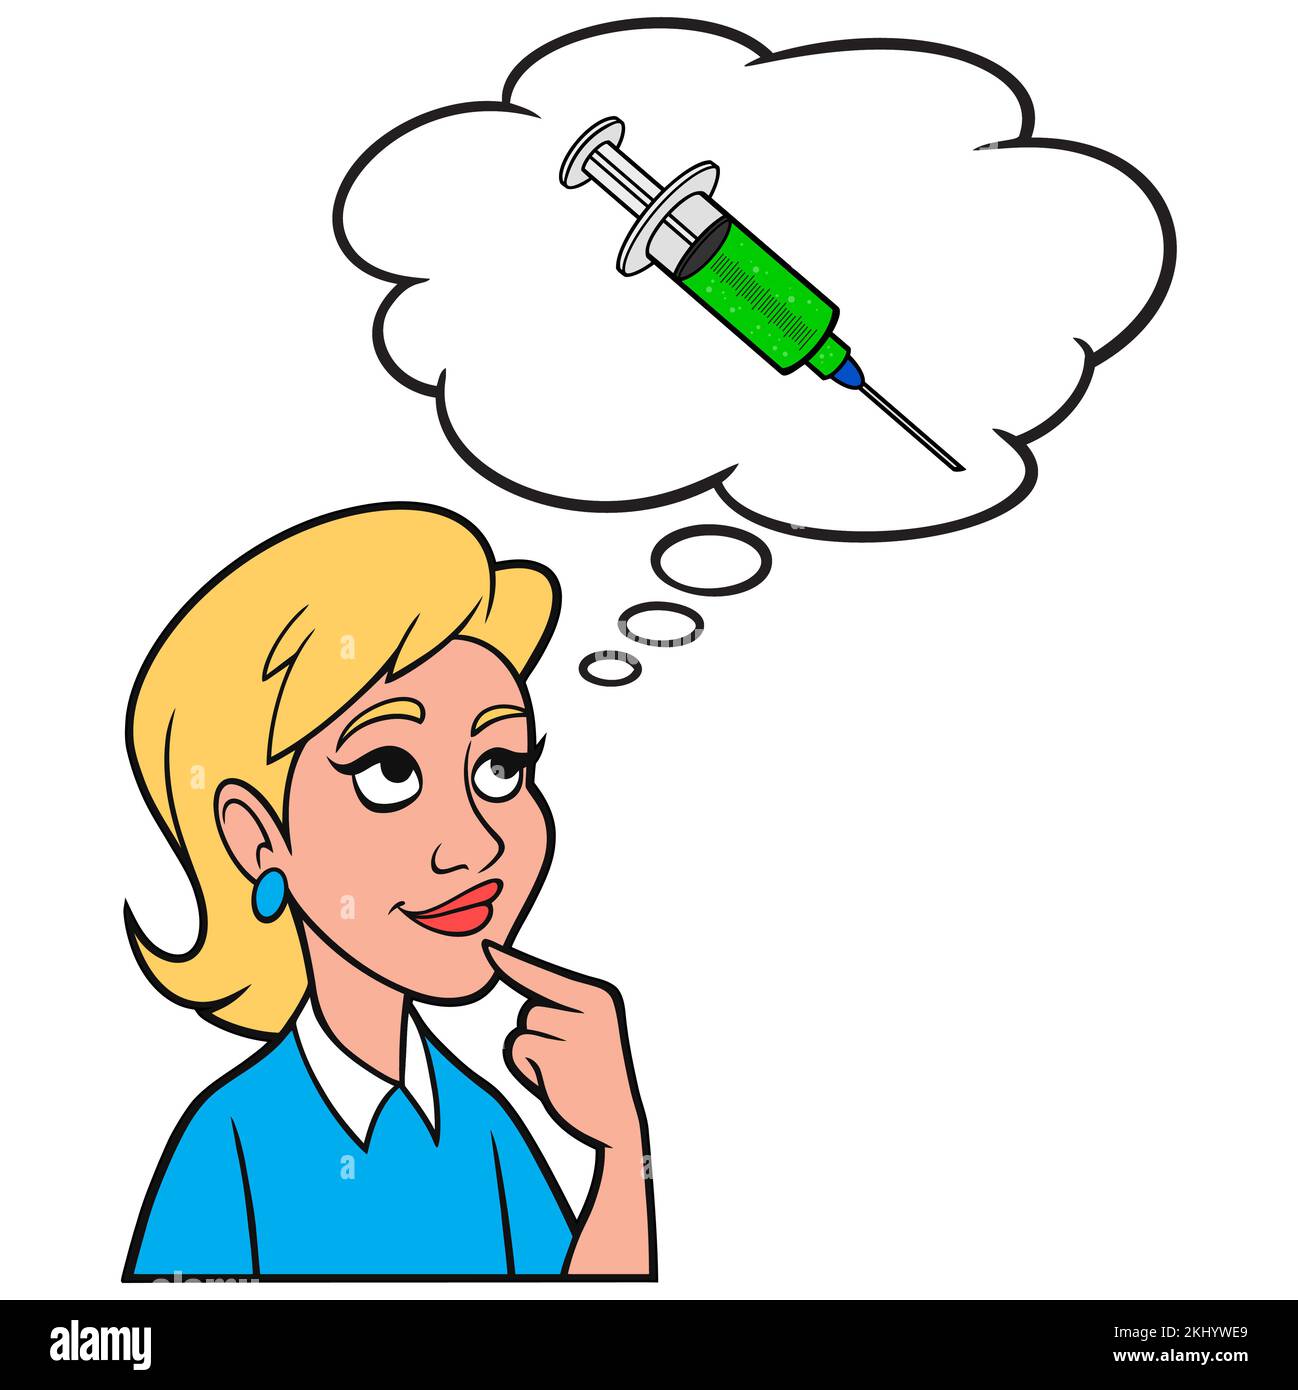 Girl thinking about a Flu Shot - A cartoon illustration of a Girl thinking about getting a Flu Shot. Stock Vector